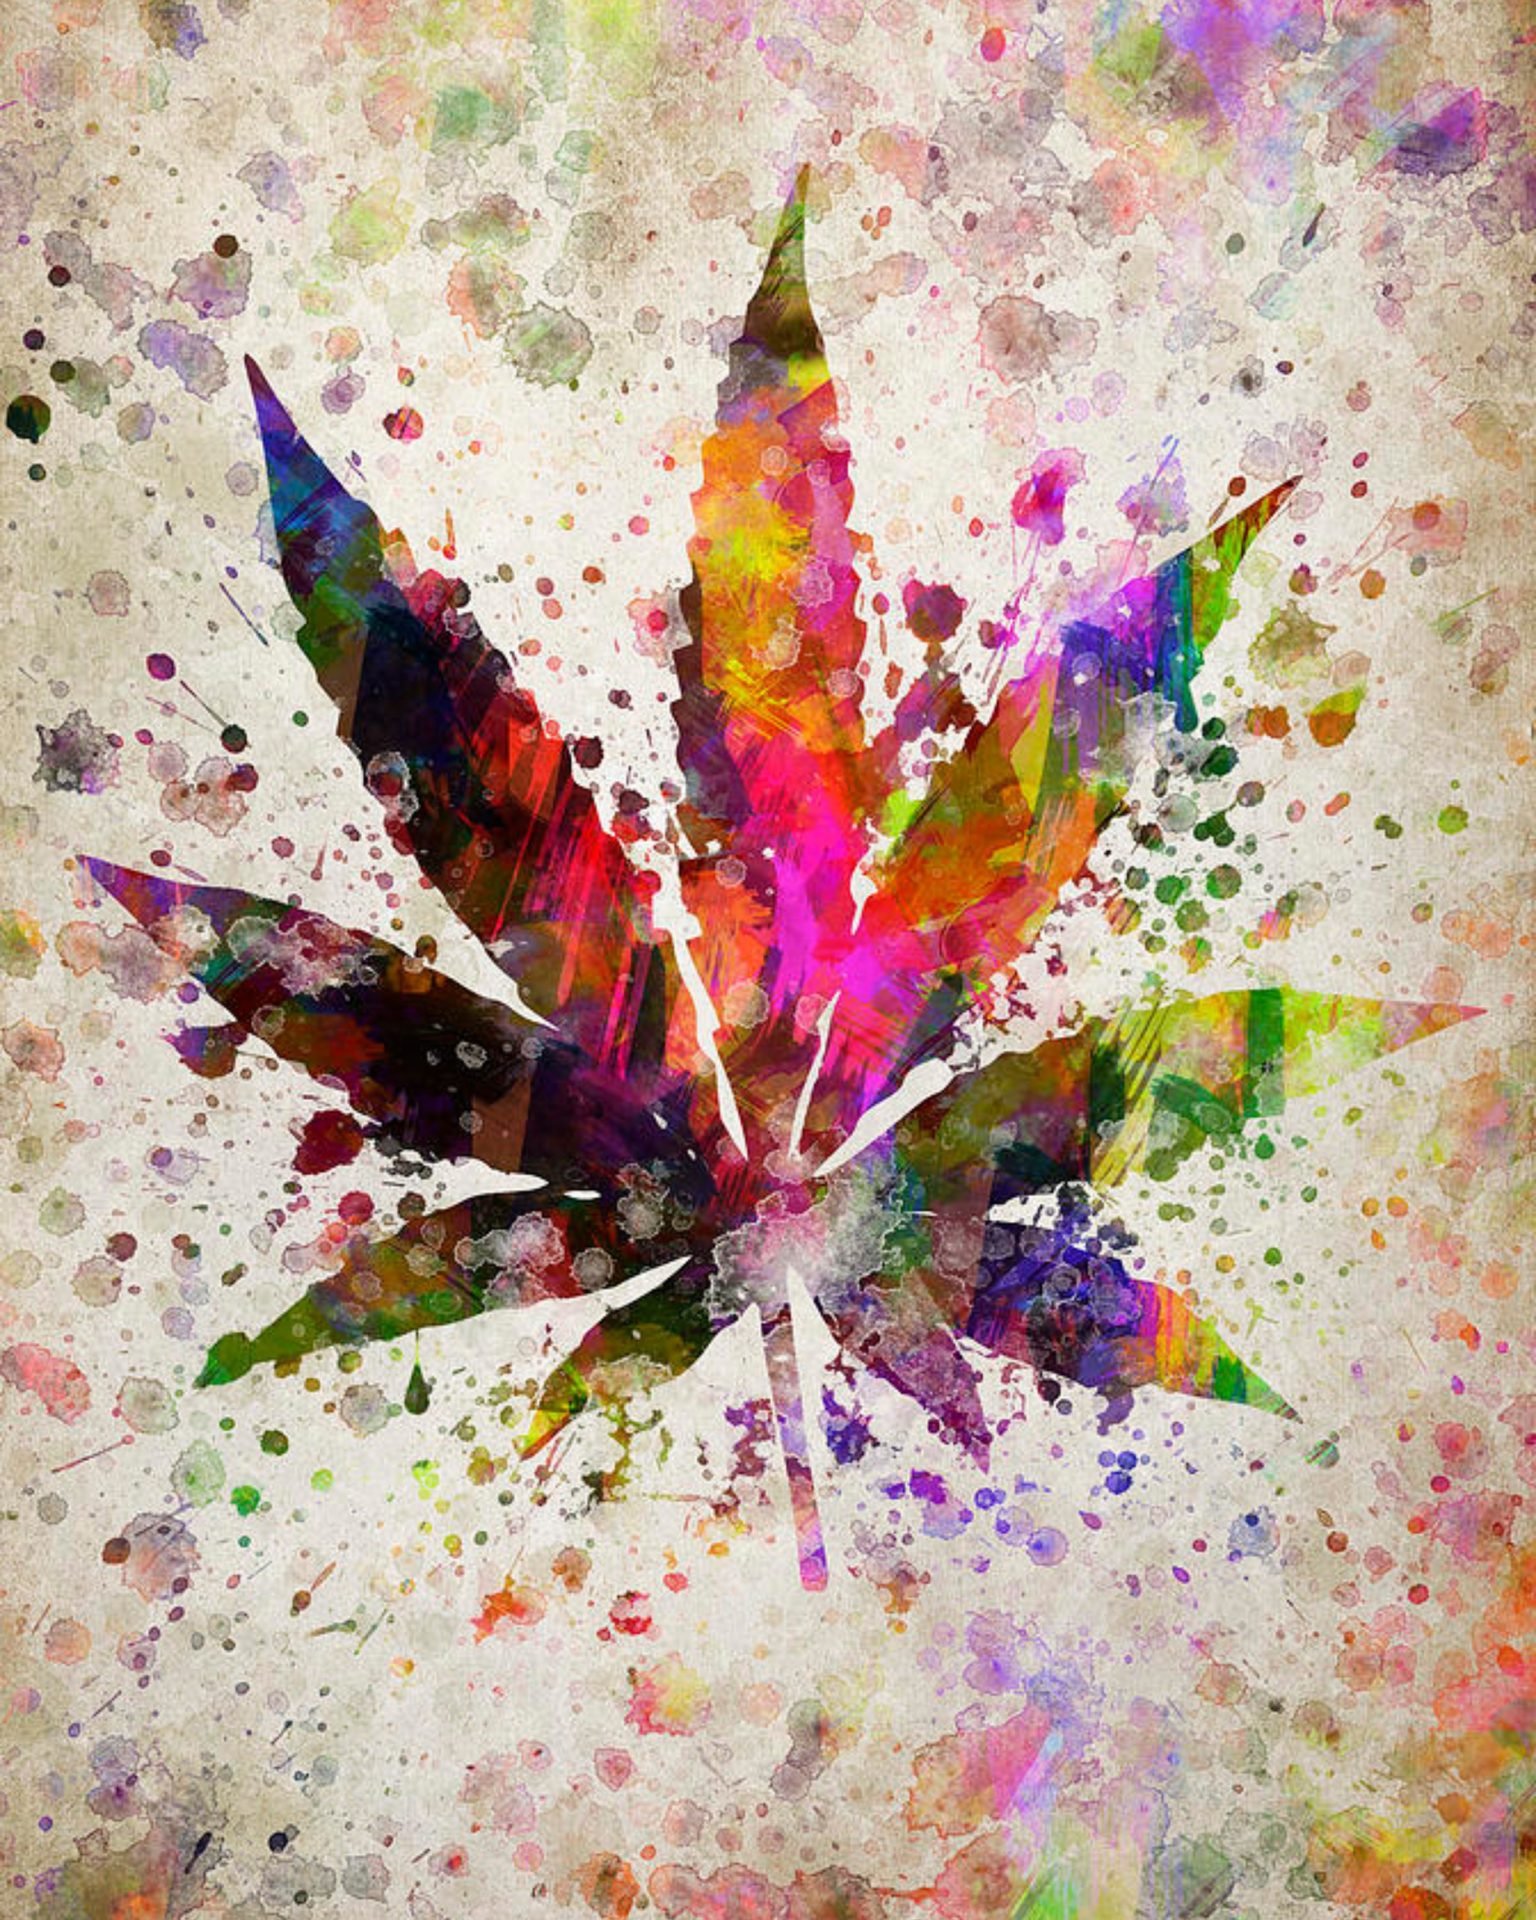 420 Cannabis Art Class | Puff Puff Paint Class | Hempfield Apothetique | Lancaster, PA